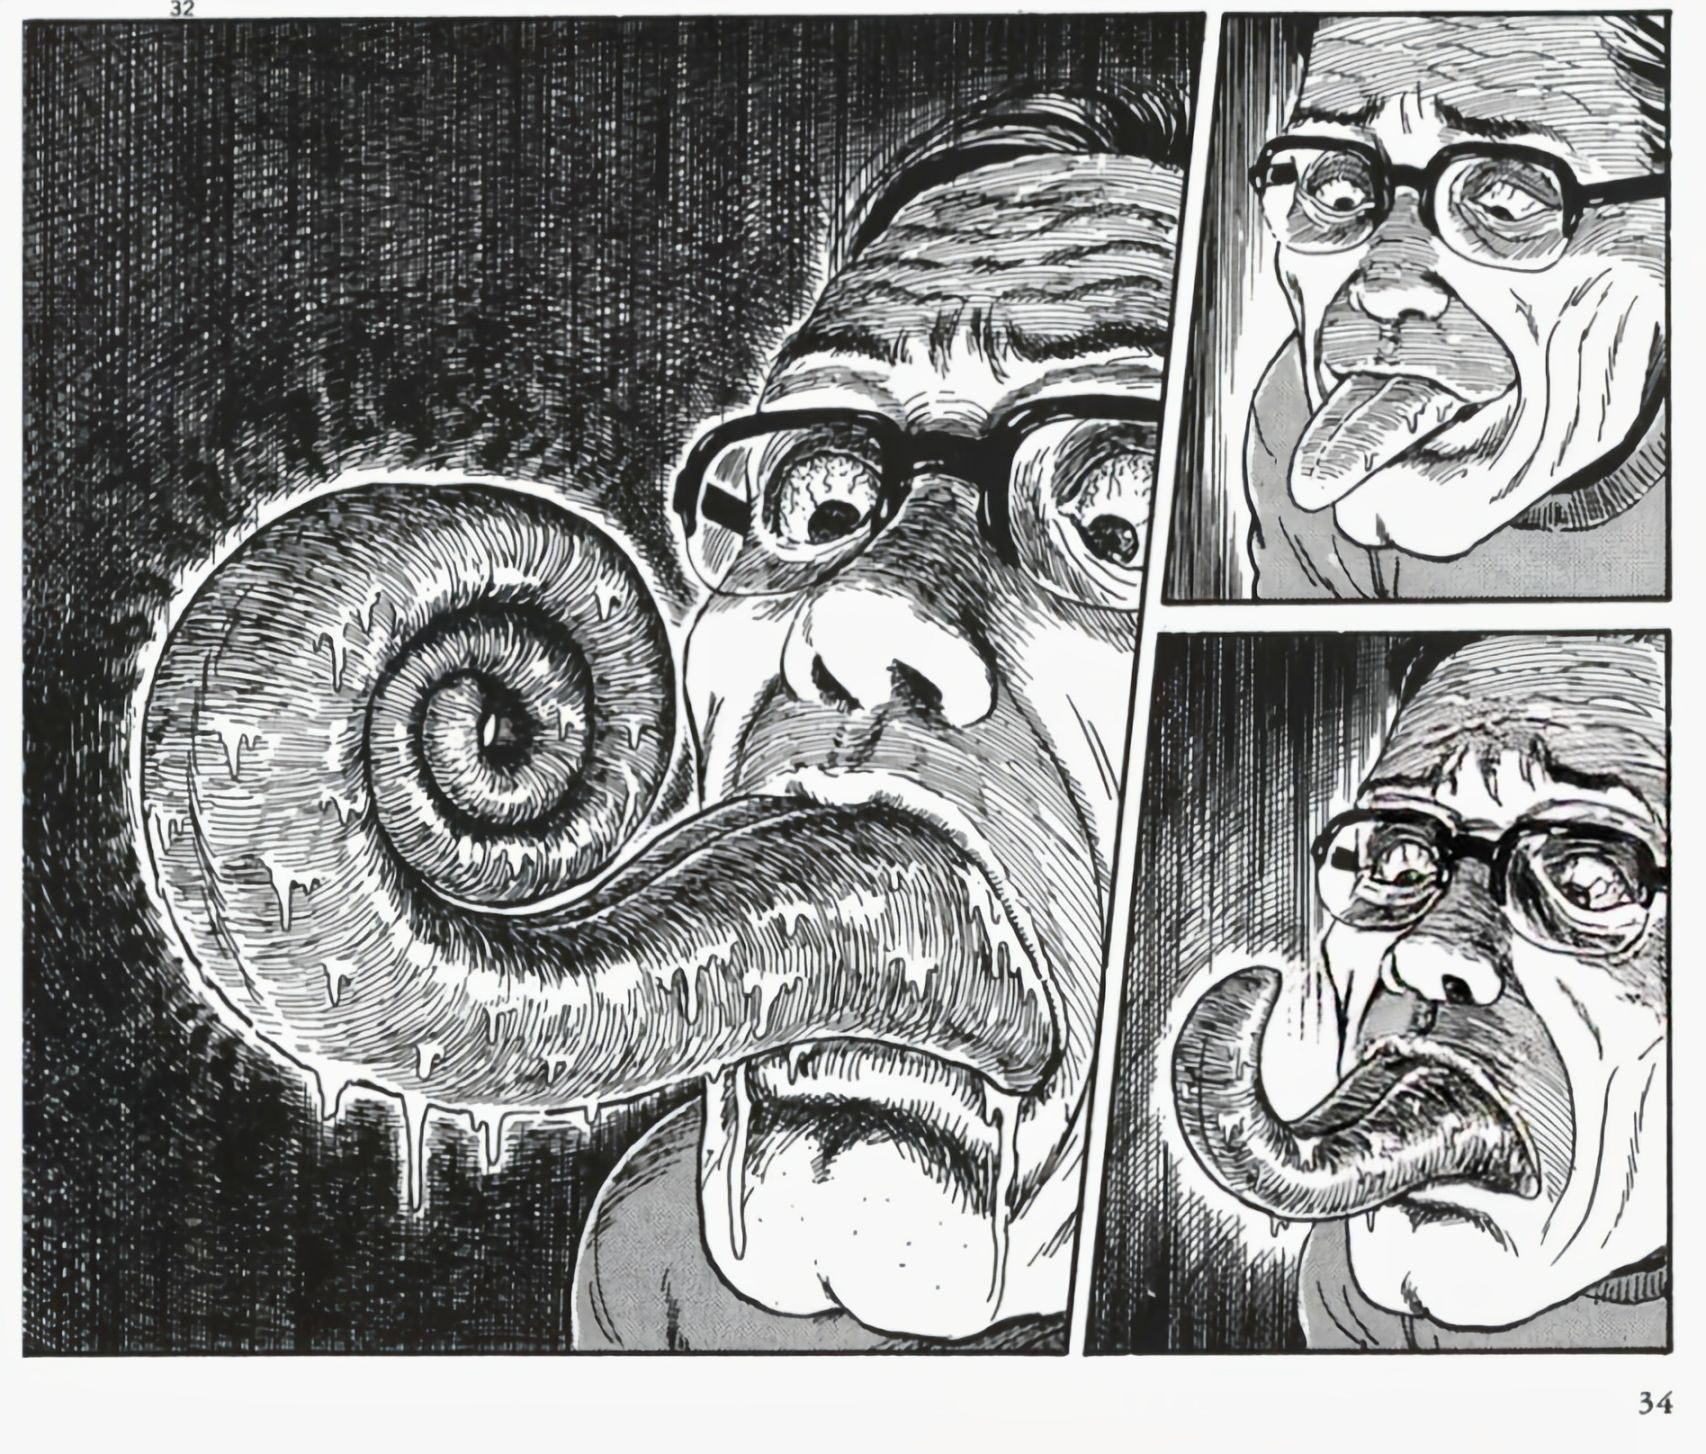 【影视动漫】伊藤润二的恐怖漫画《漩涡》-第13张